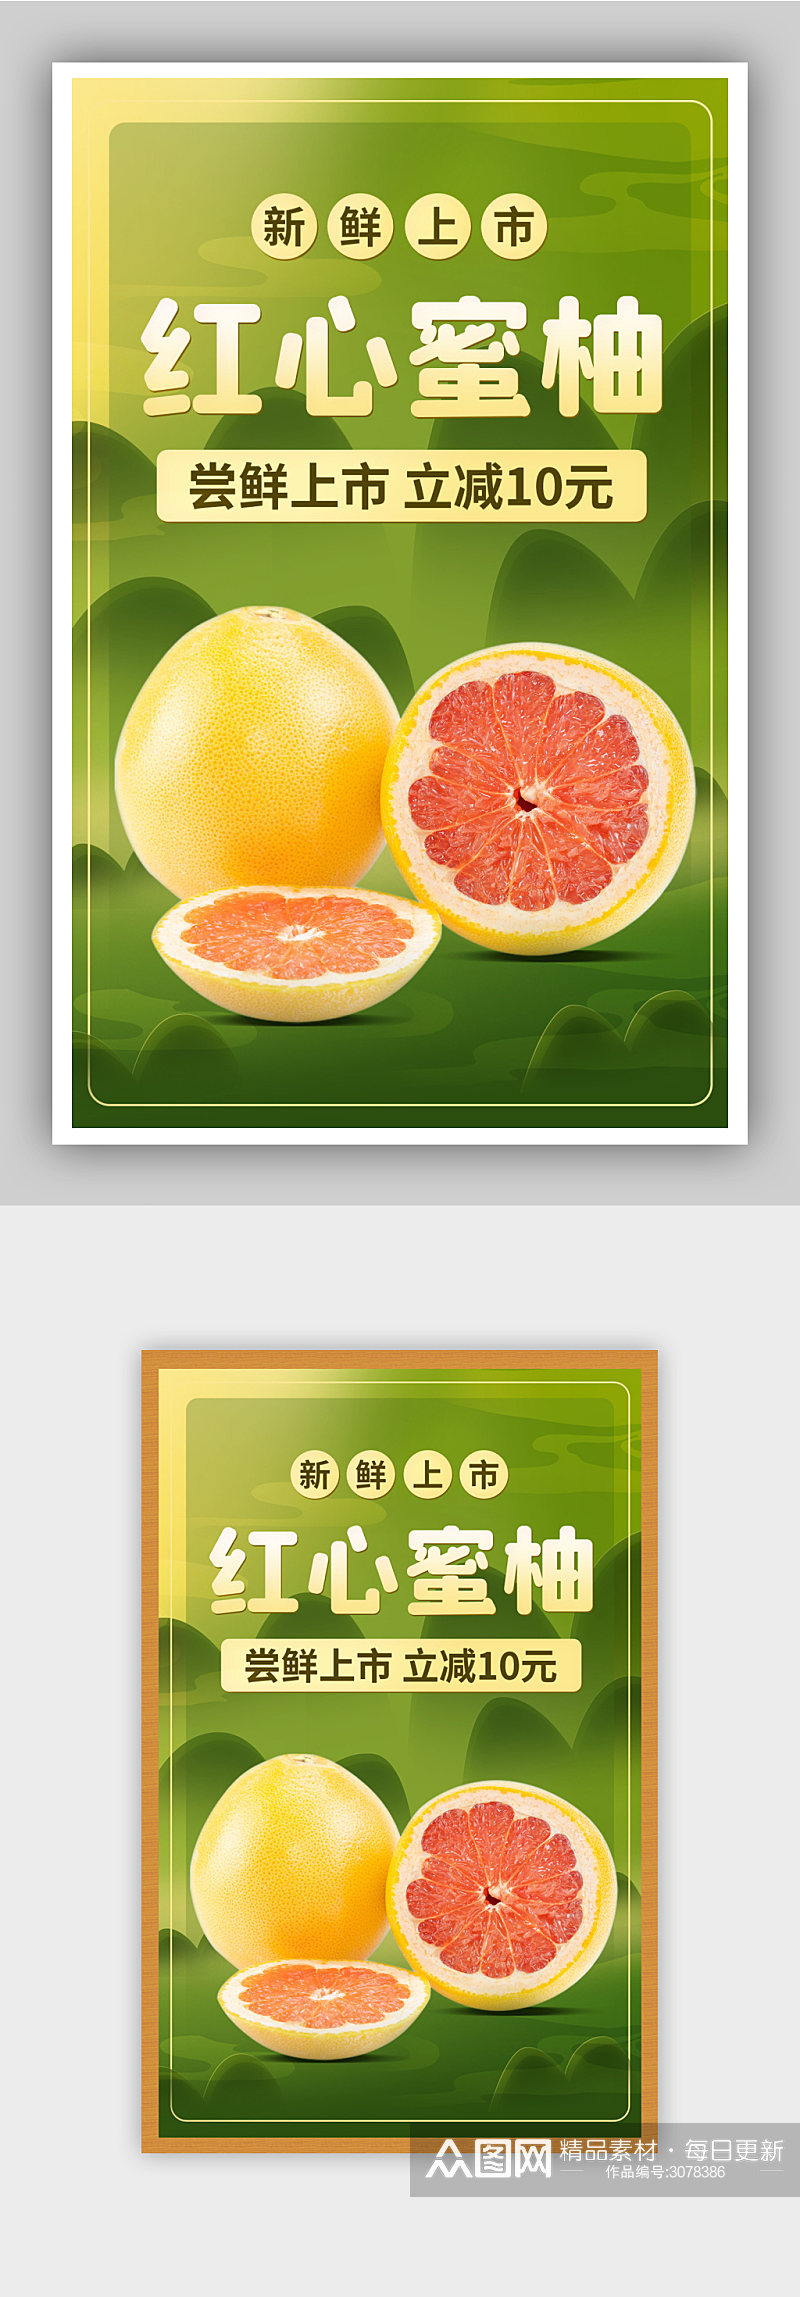 柚子水果食品新品促销绿色海报素材